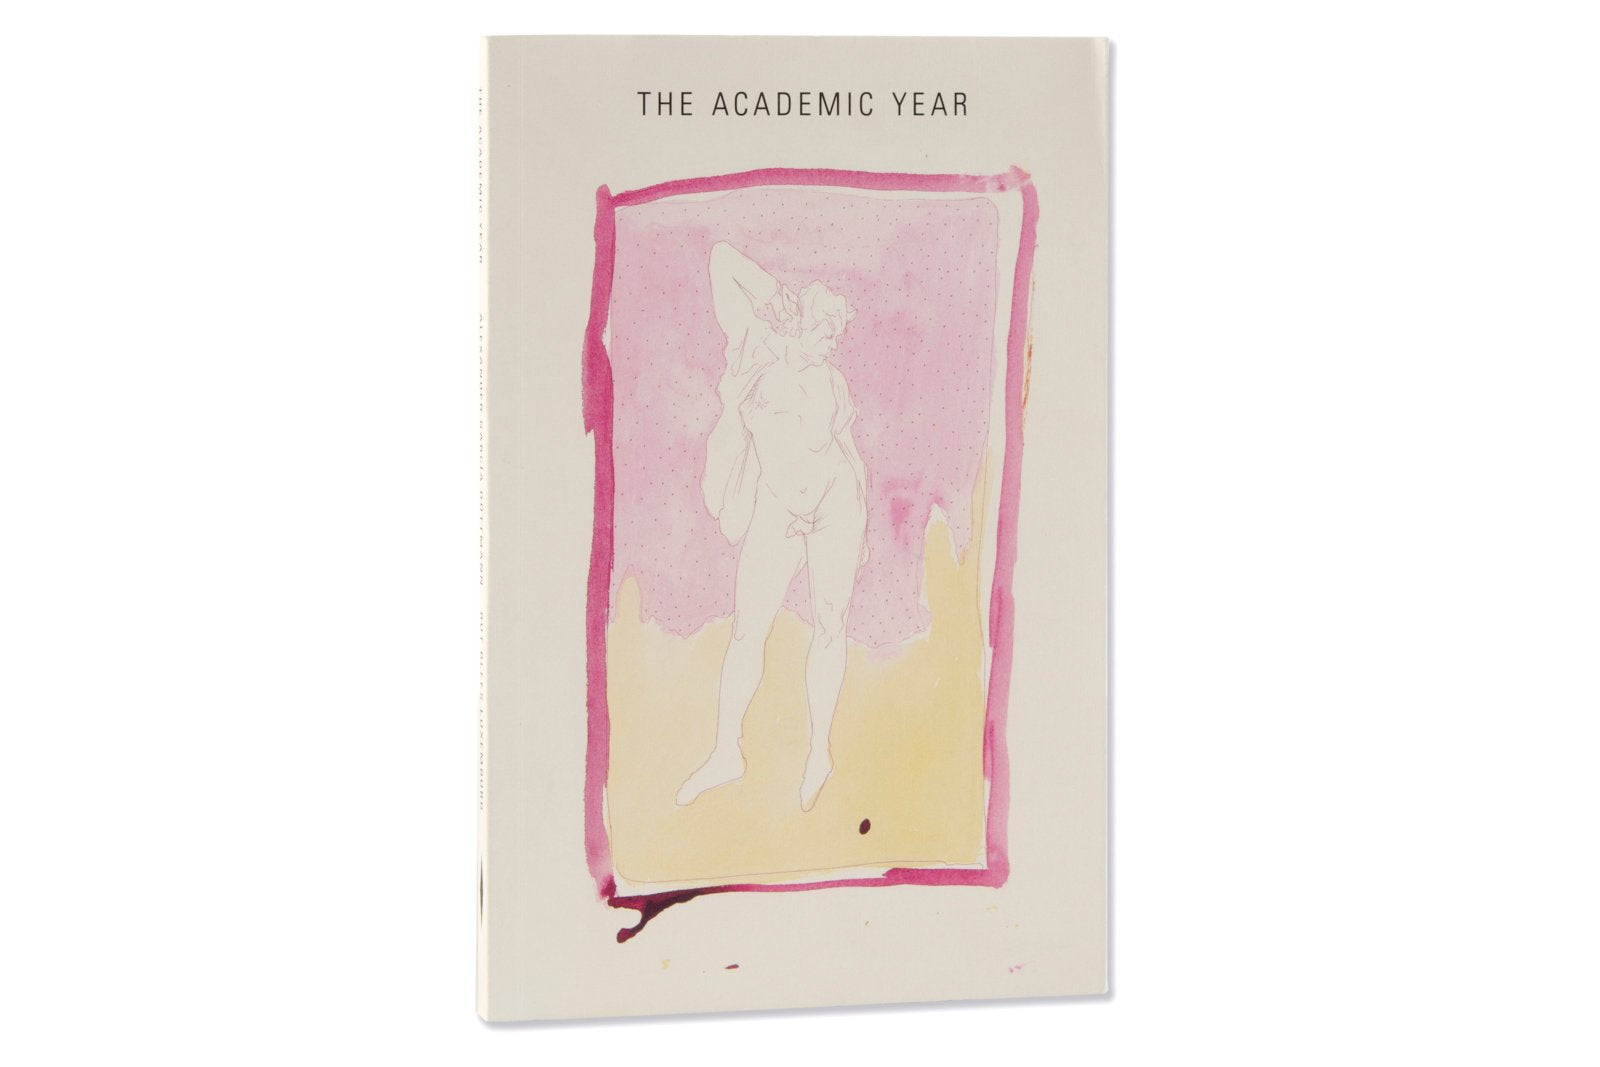 The Academic Year by Rut Blees Luxemburg & Alexander García Düttmann